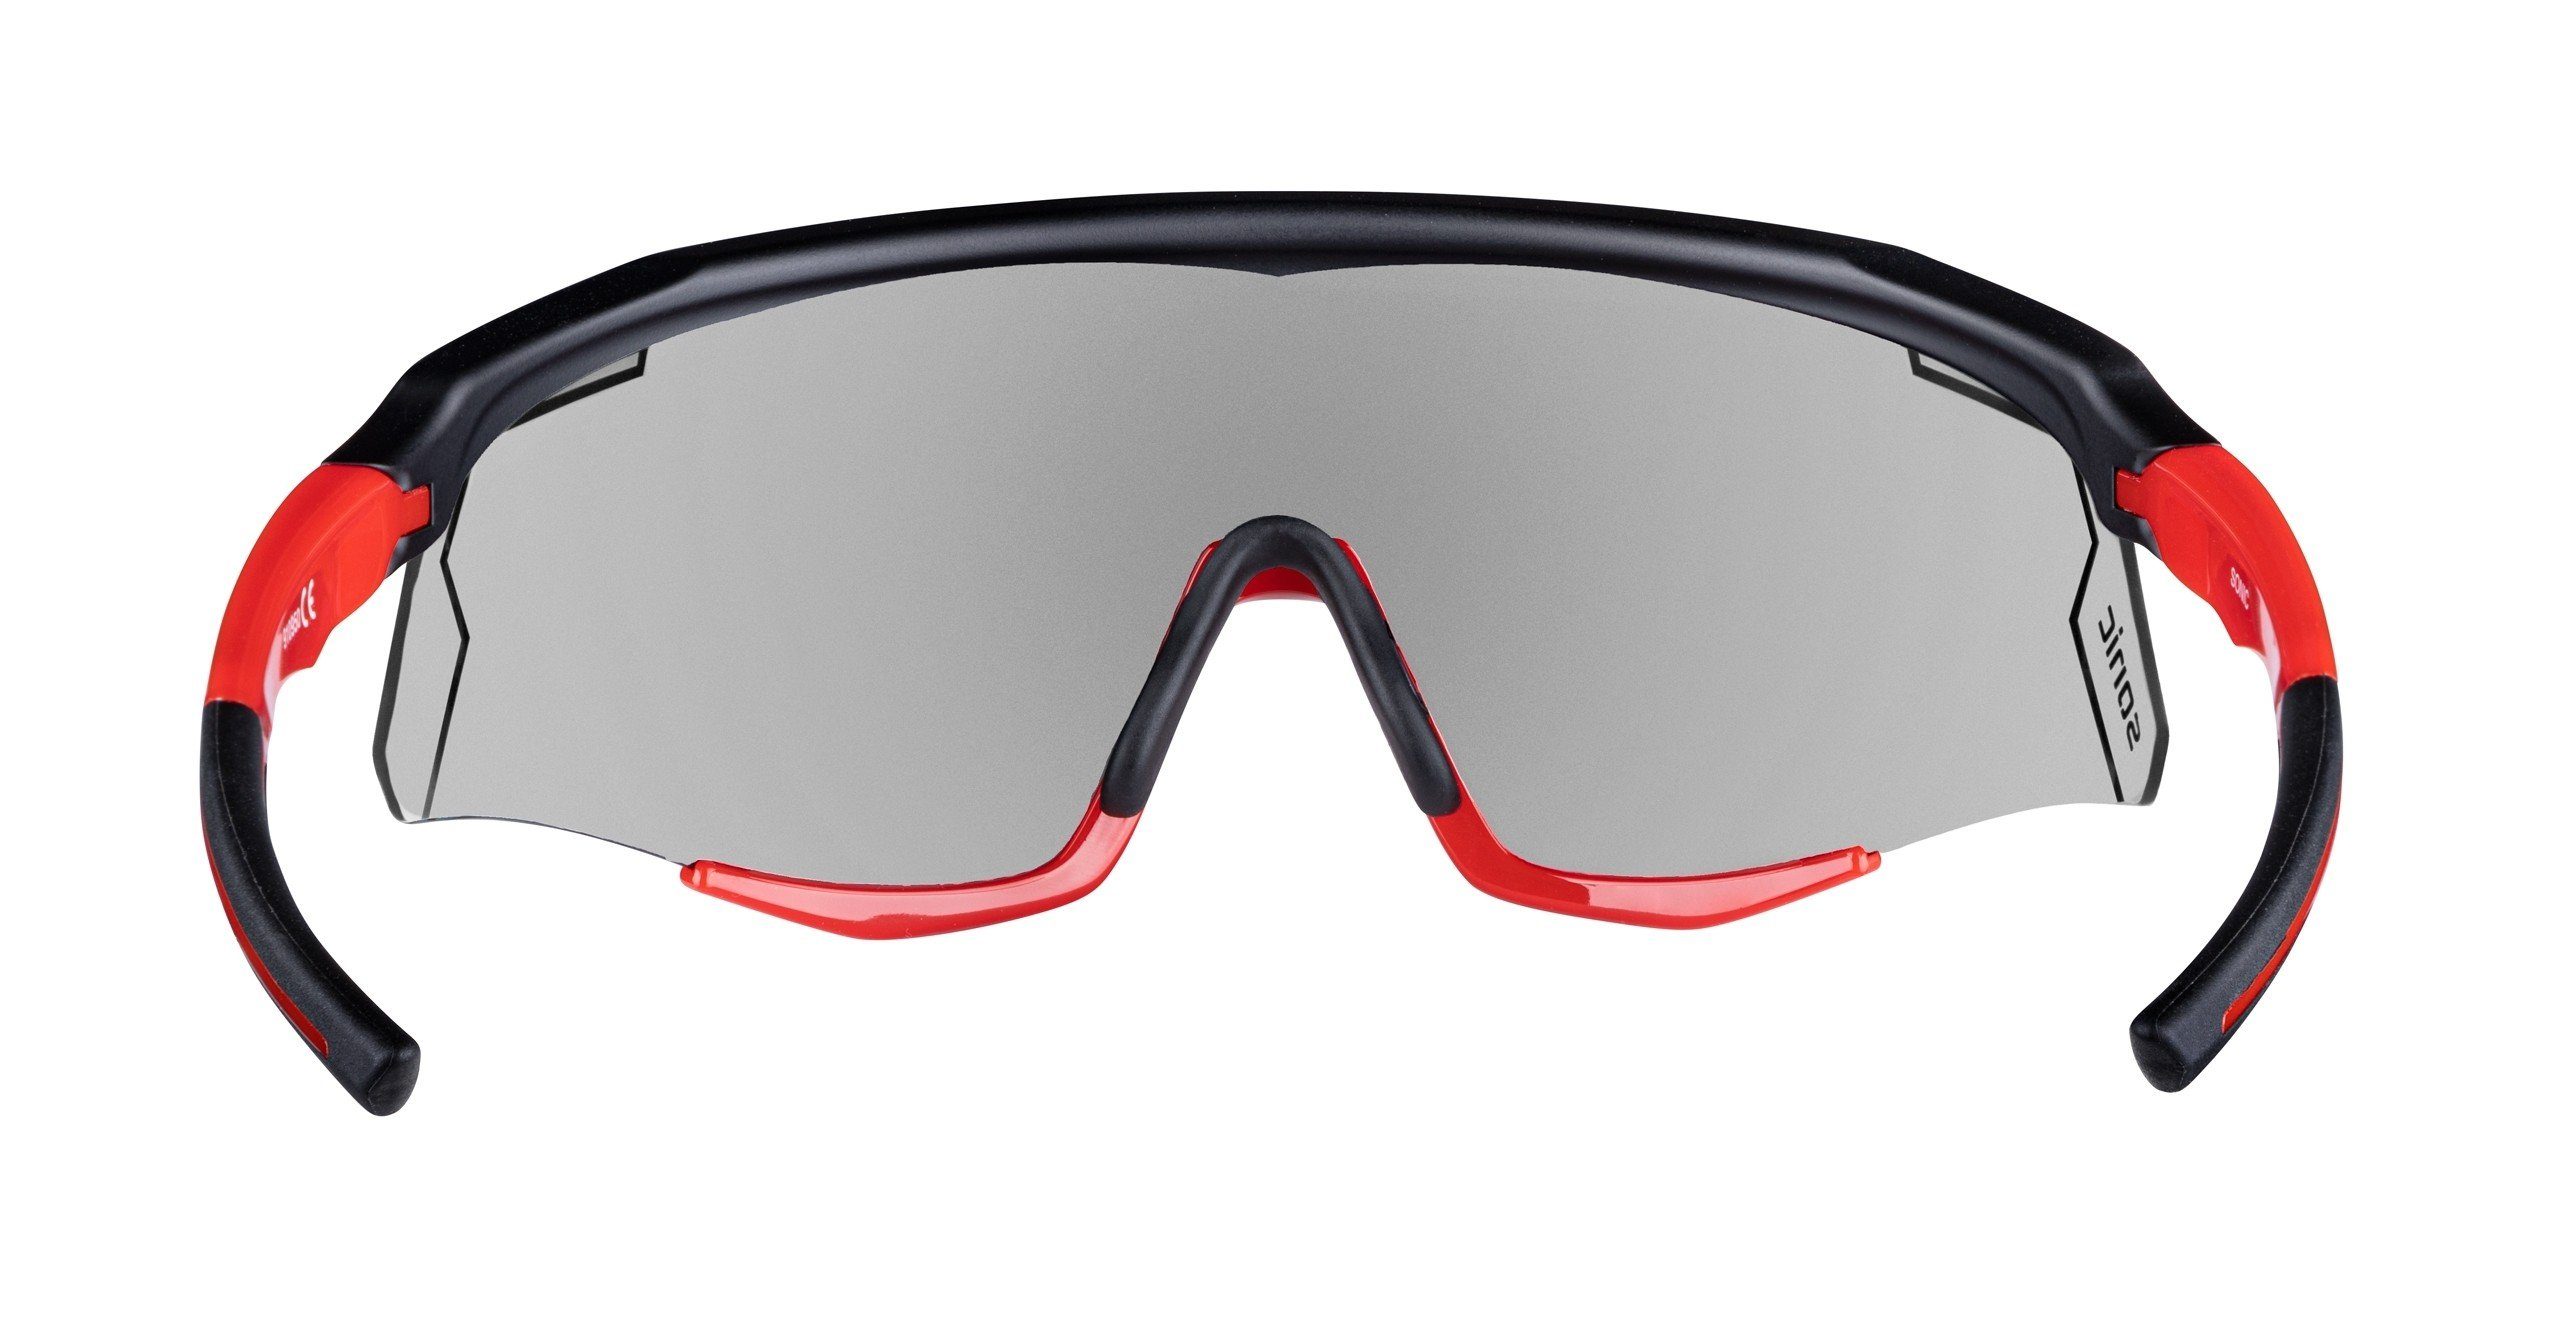 SONIC Sonnenbrille Fahrradbrille rot-schwarz FORCE lens photochromic FORCE